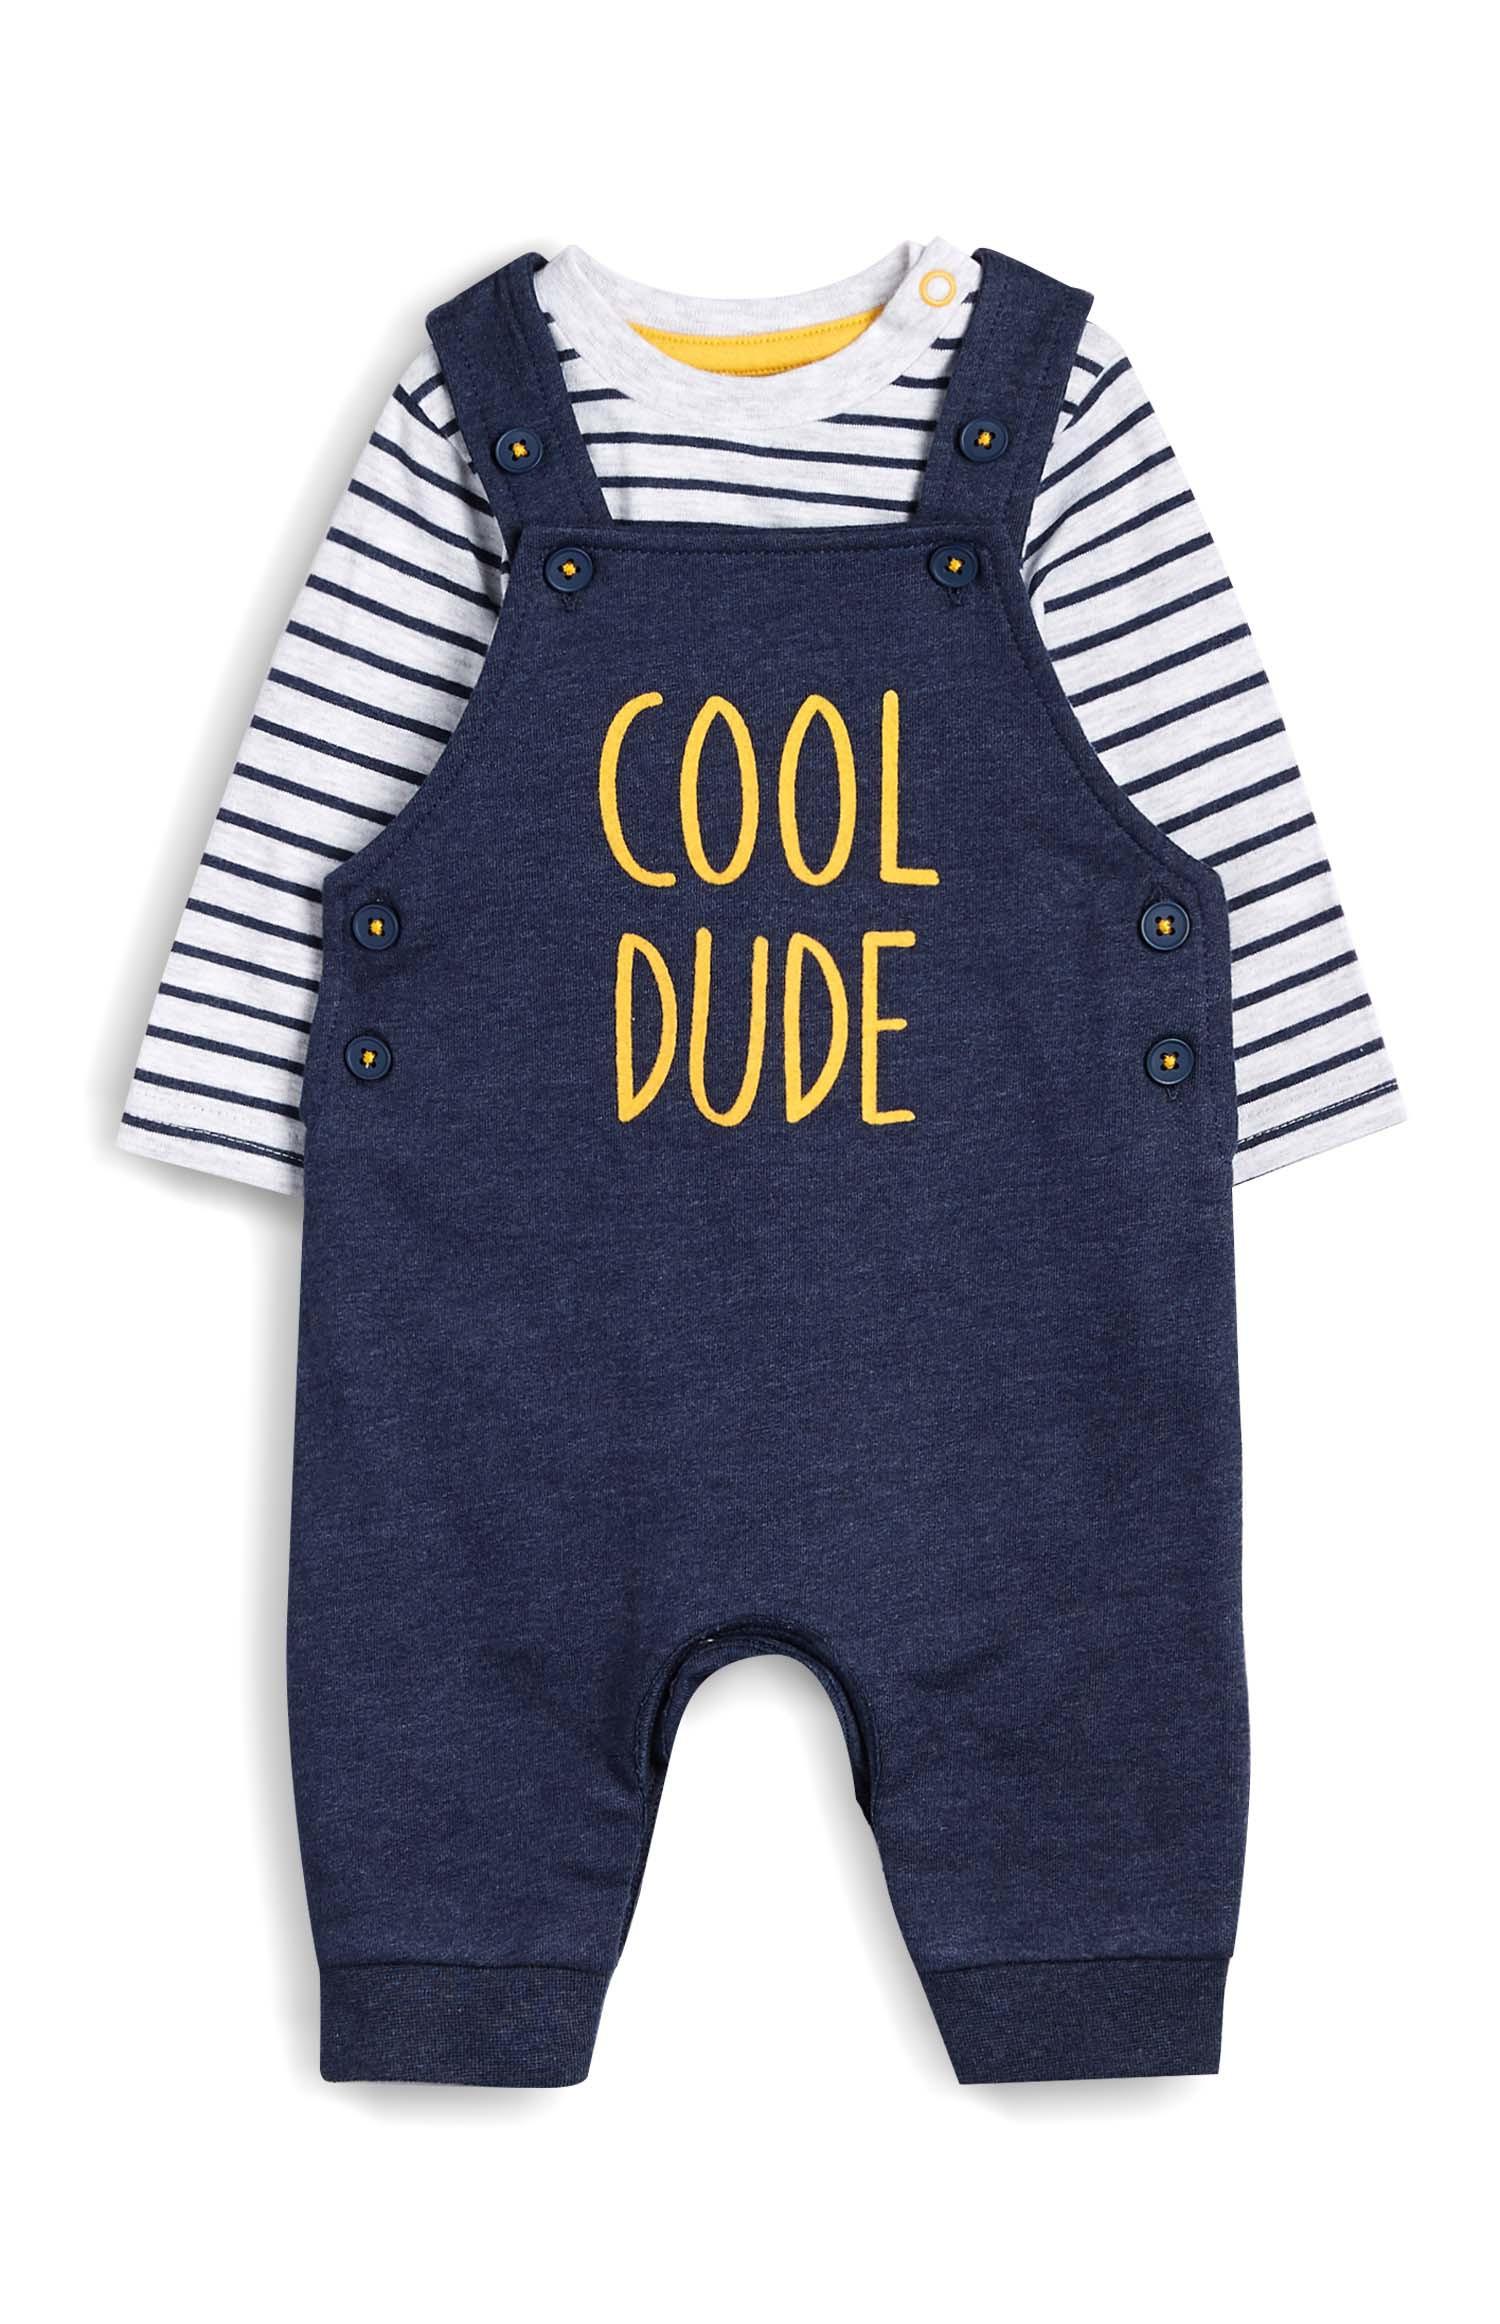 newborn baby boy clothes primark